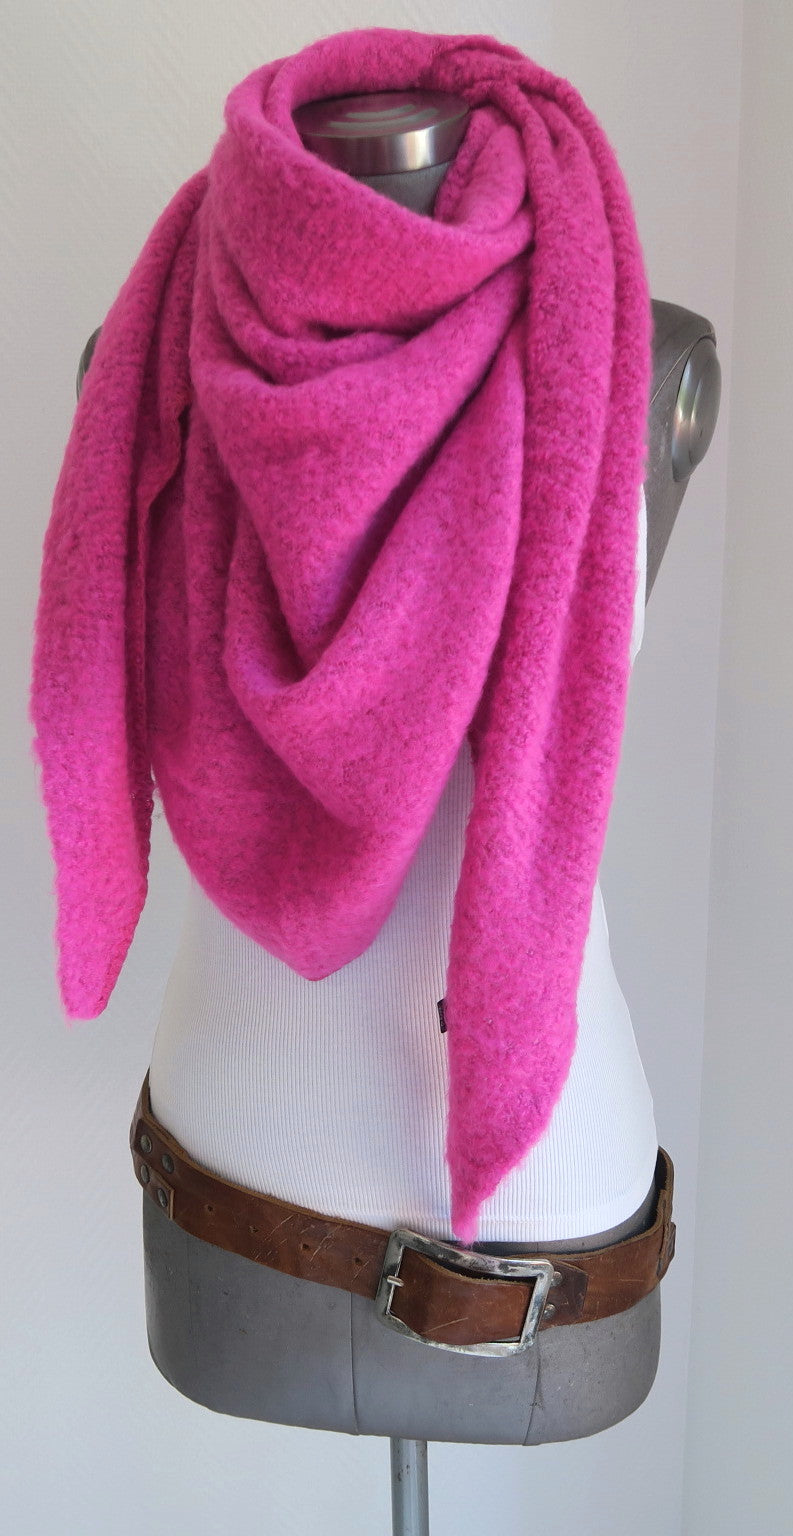 Flausch Damen Dreieckstuch pink|secretofstyle Wolle Schal